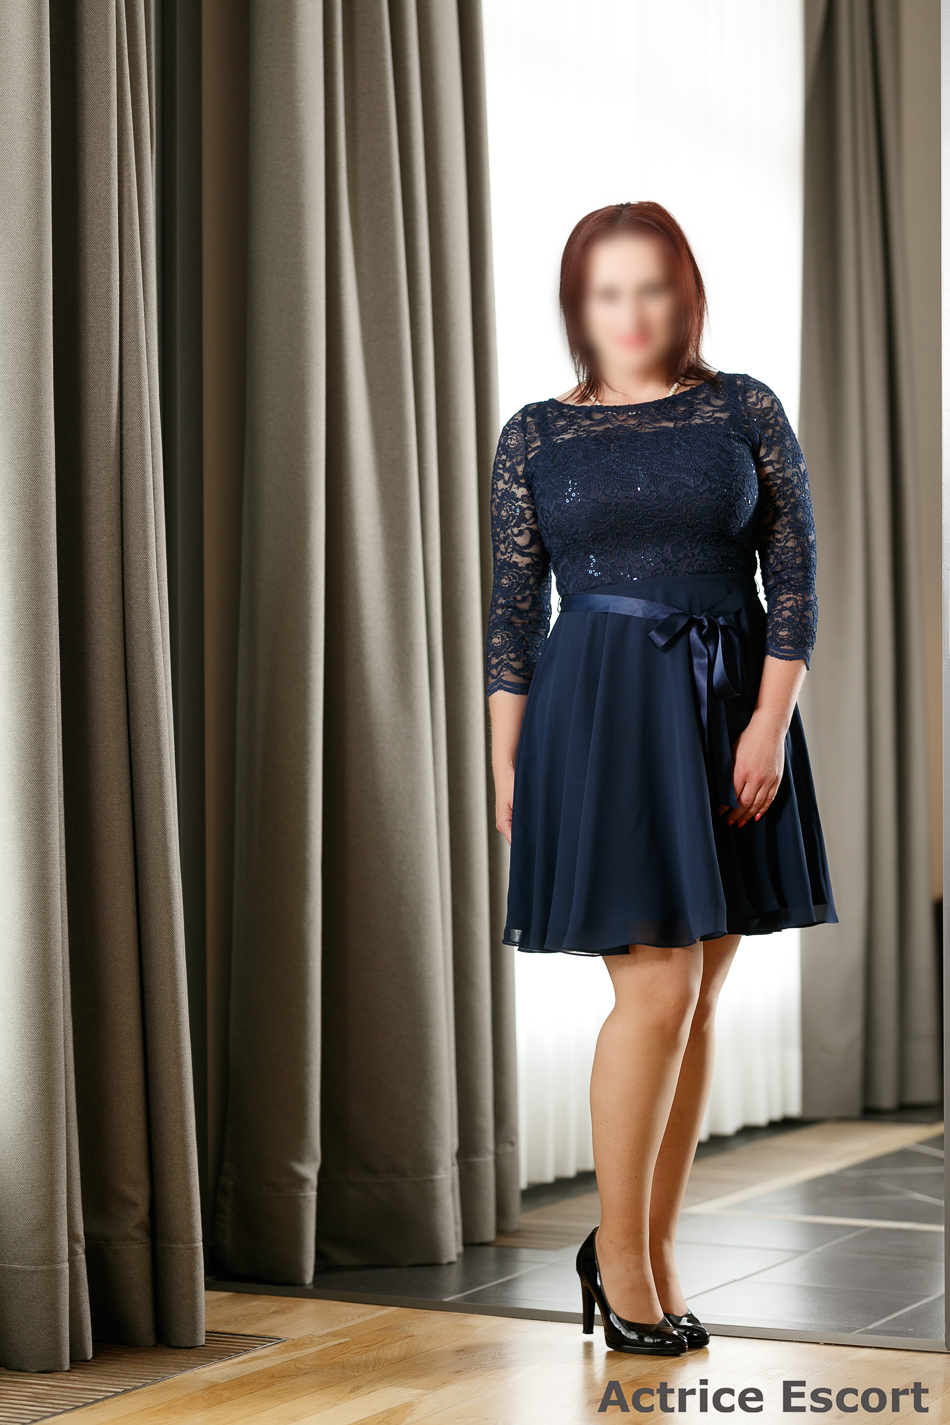 Alexandra Escortservice Bernburg Saale elegantes Kleid in blau - Escort Damen